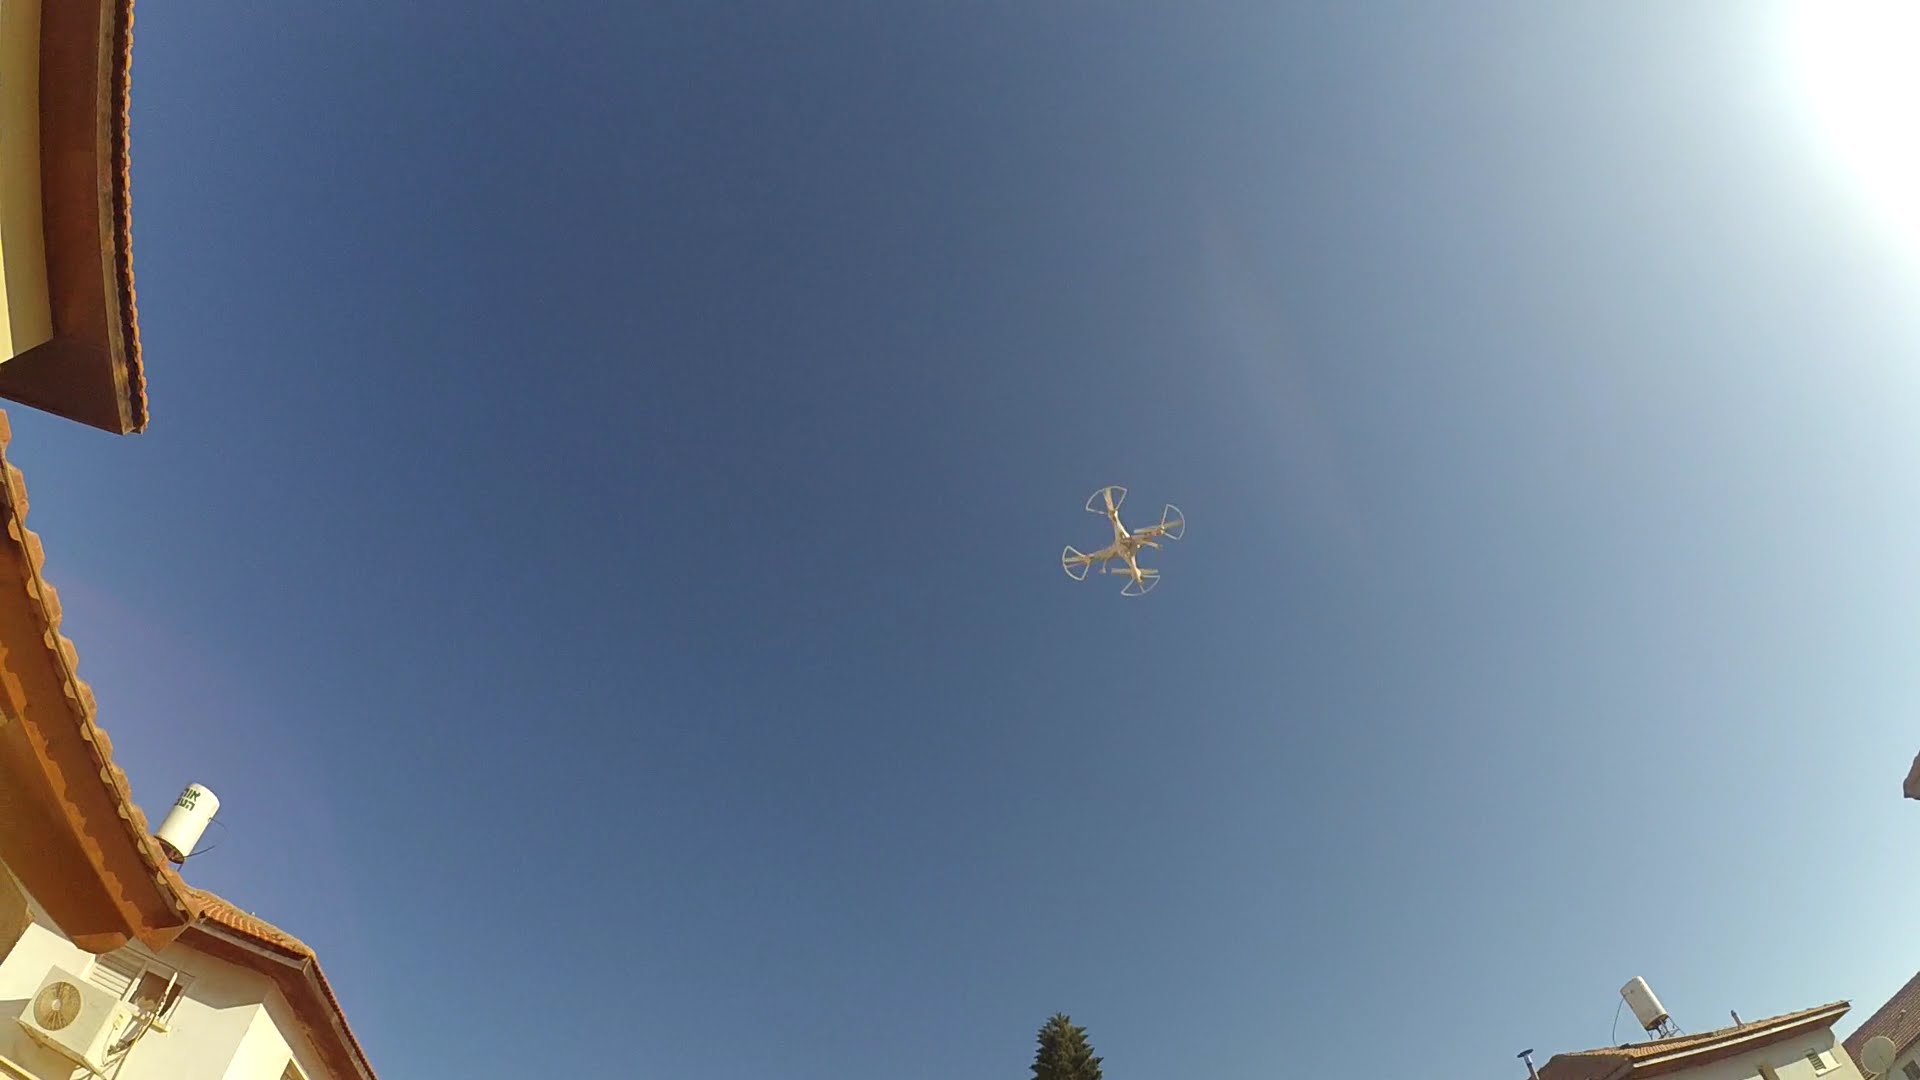 Syma X8C quadcopter high altitude